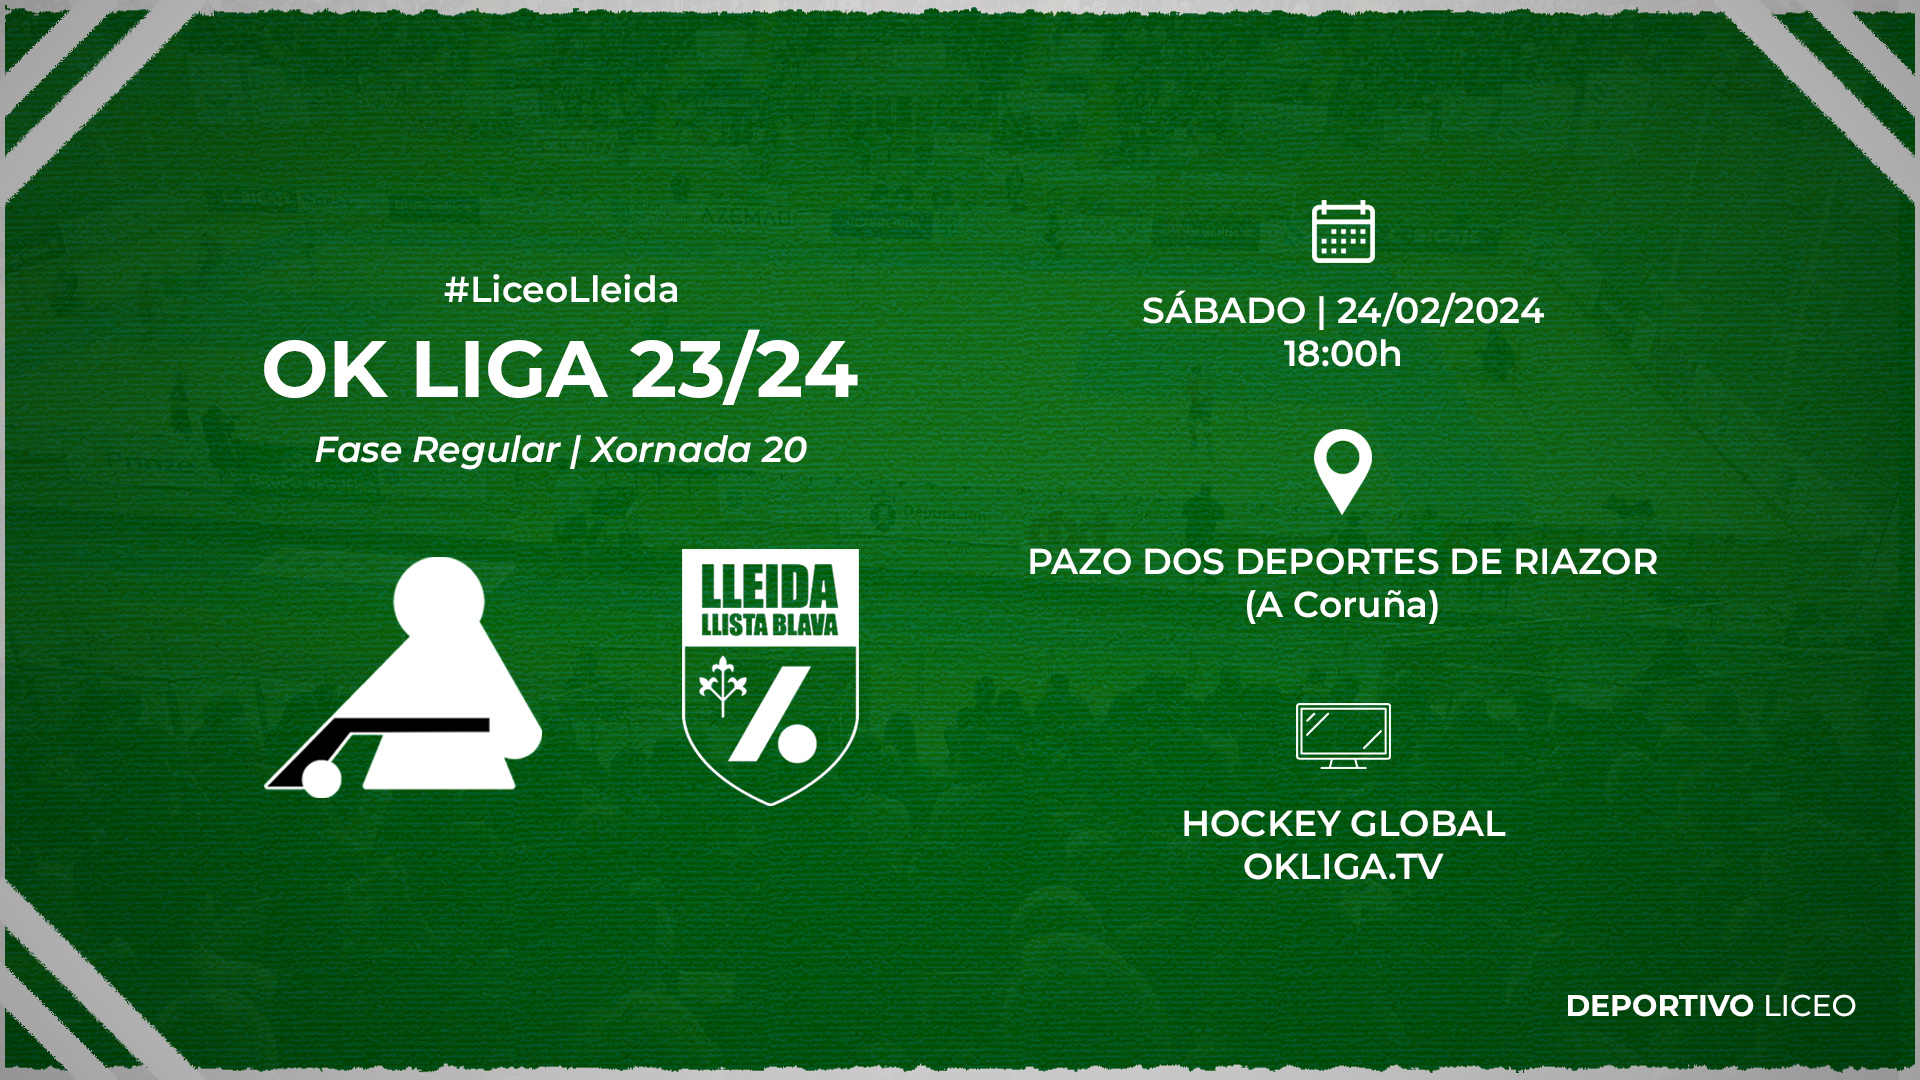 #LiceoLleida | ENTRADAS para a xornada 20 da OK Liga 23/24